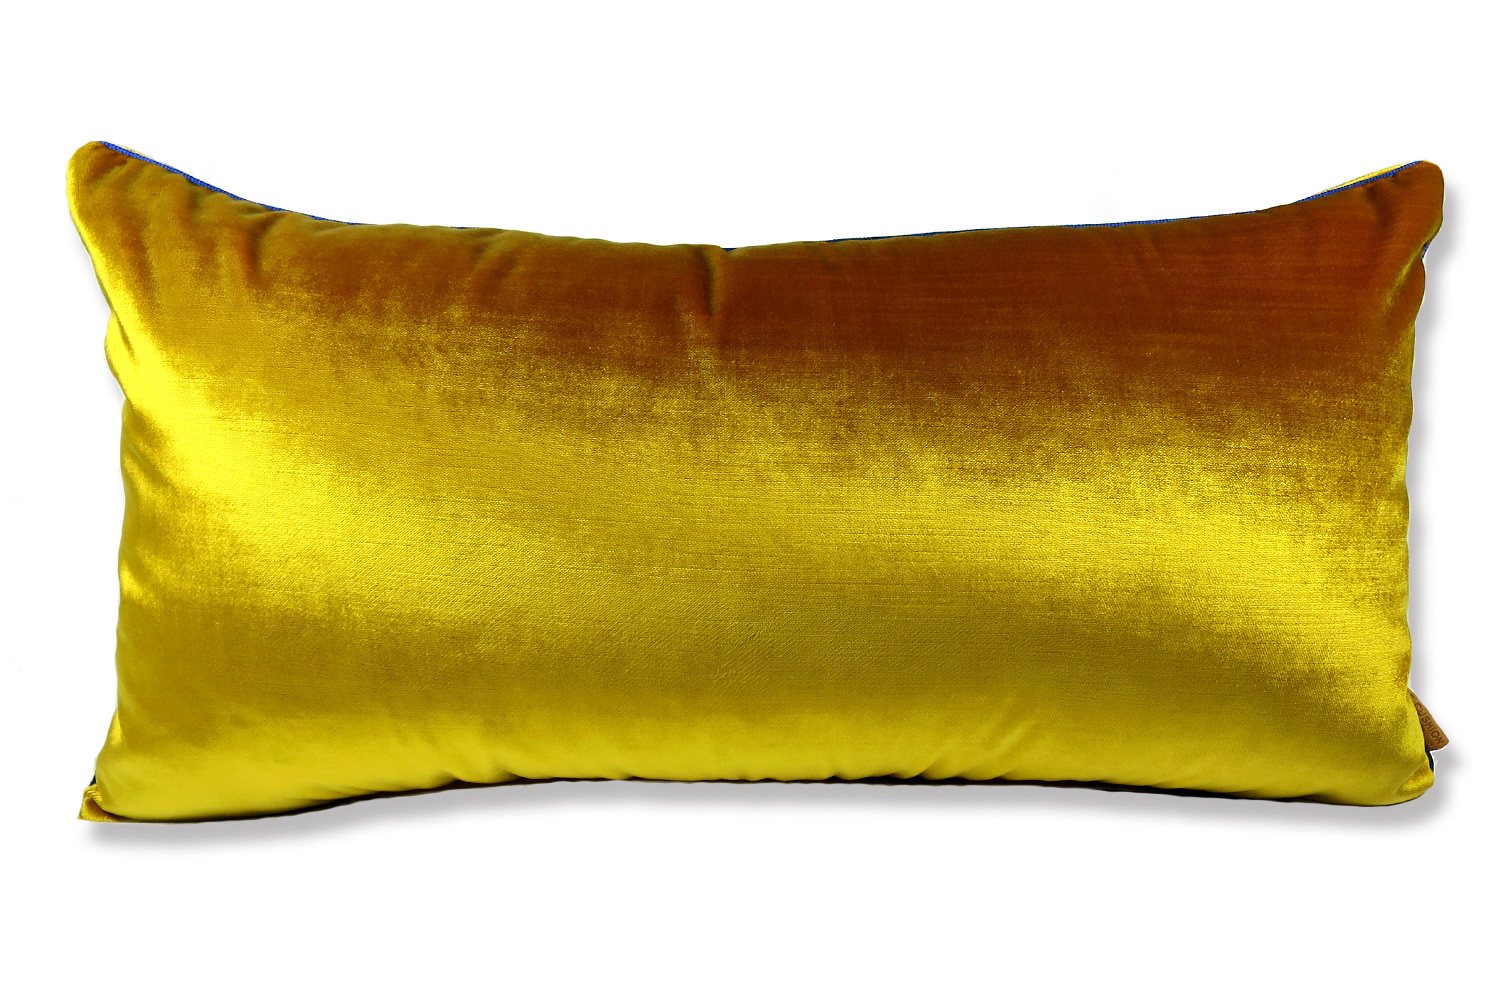 上質なベルベットの質感と美しいゴールドイエローの色調にうっとりしてしまうクッション